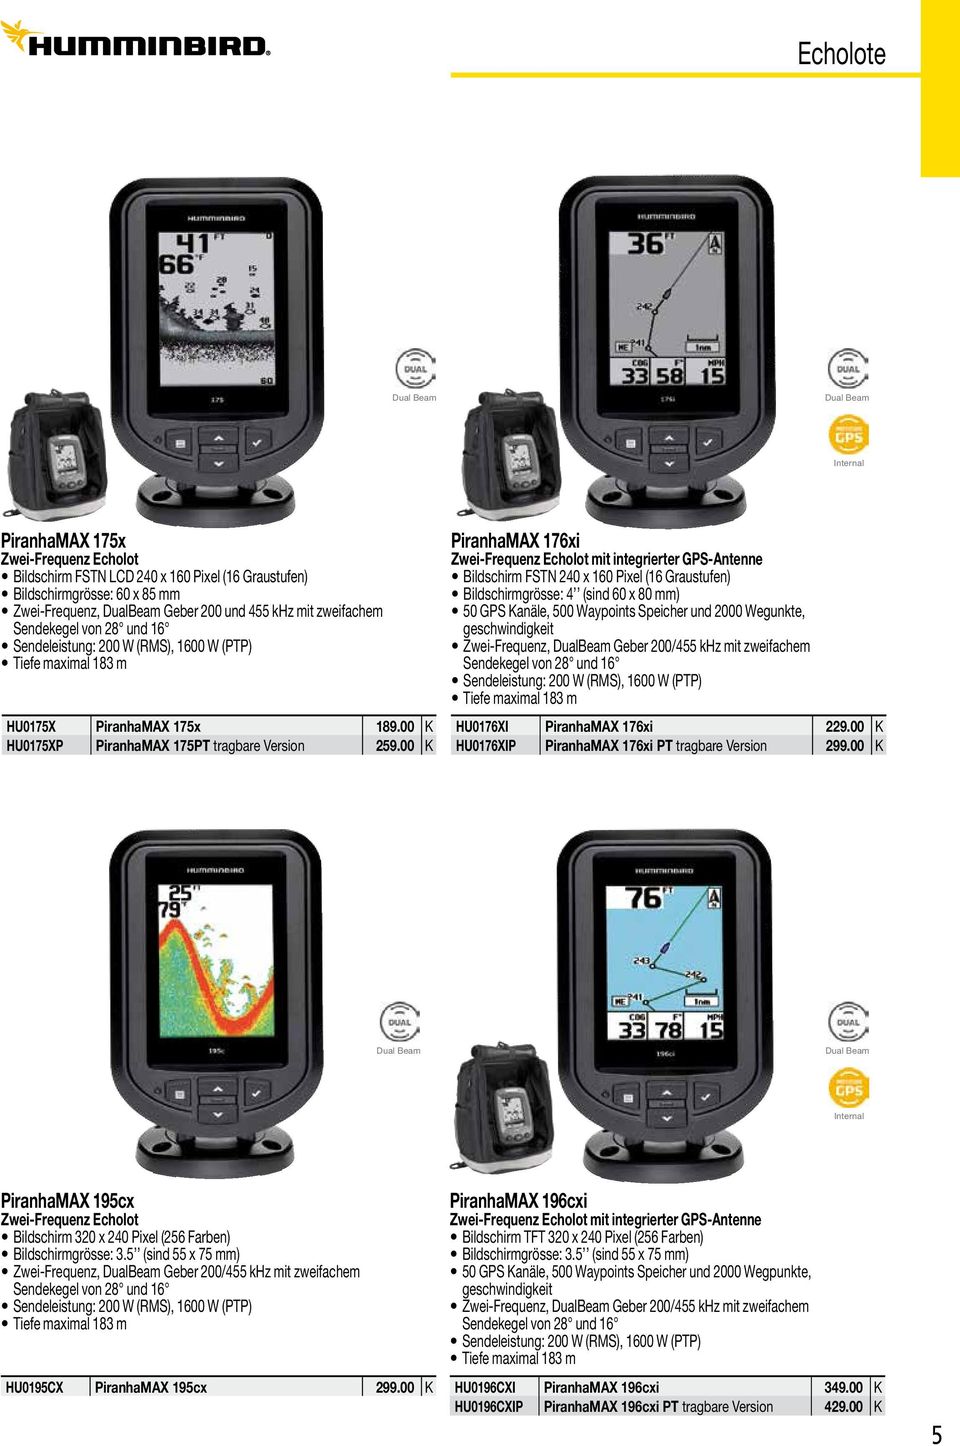 00 K PiranhaMAX 176xi Zwei-Frequenz Echolot mit integrierter GPS-Antenne Bildschirm FSTN 240 x 160 Pixel (16 Graustufen) Bildschirmgrösse: 4 (sind 60 x 80 mm) 50 GPS Kanäle, 500 Waypoints Speicher